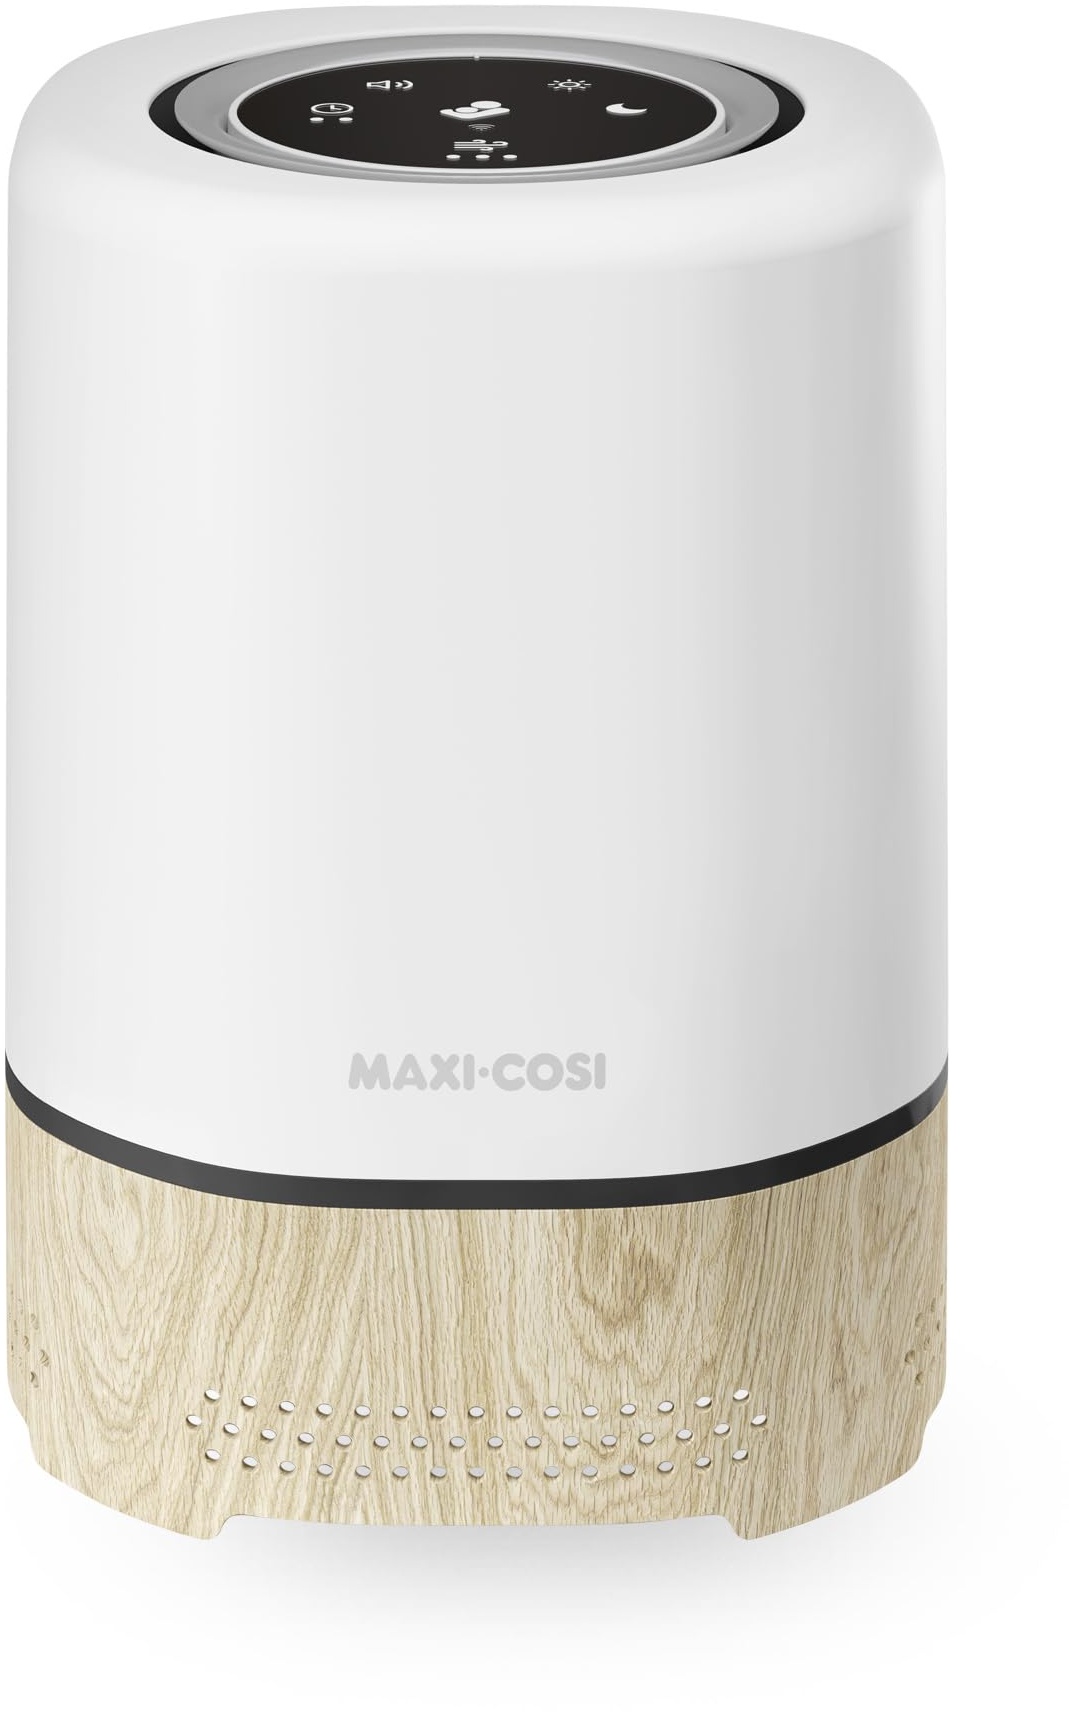 Maxi-Cosi Clean 3-in-1 Luftreiniger, Baby HEPA Luftreiniger für Schlafzimmer (H13), ab Geburt, Allergie-Luftreiniger HEPA 13, Teil von Maxi-Cosi Connected Home – Mit Alexa/Google Assistant kompatibel